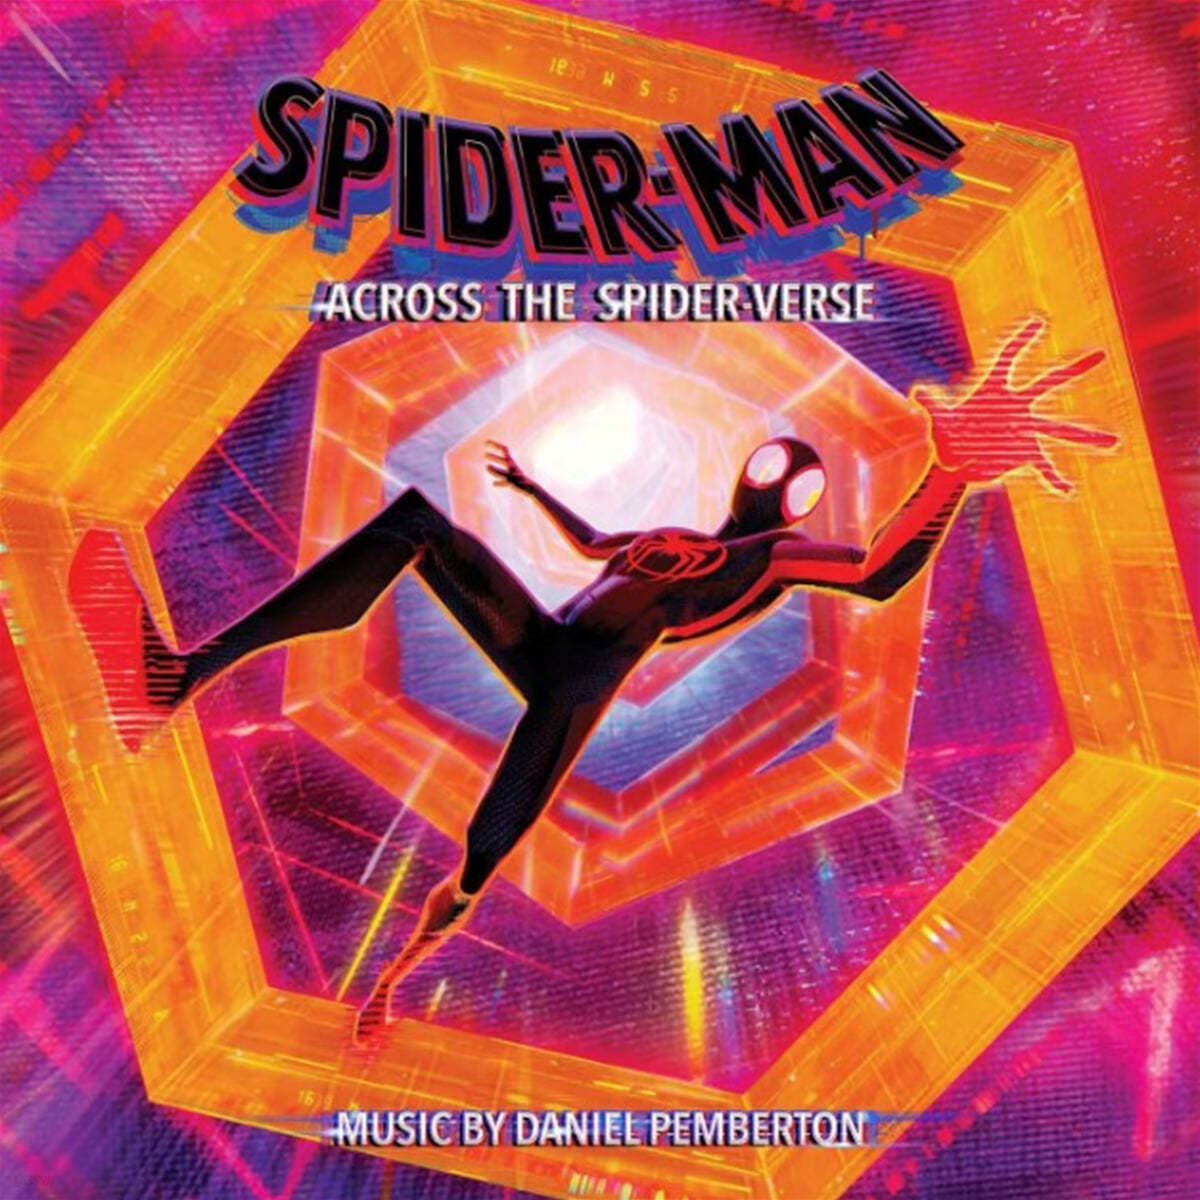 스파이더맨: 어크로스 더 유니버스 애니메이션 음악 (Spider-Man: Across the Spider-Verse OST by Daniel Pemberton) [화이트 &amp; 다크 퍼플 마블 컬러 2LP] 